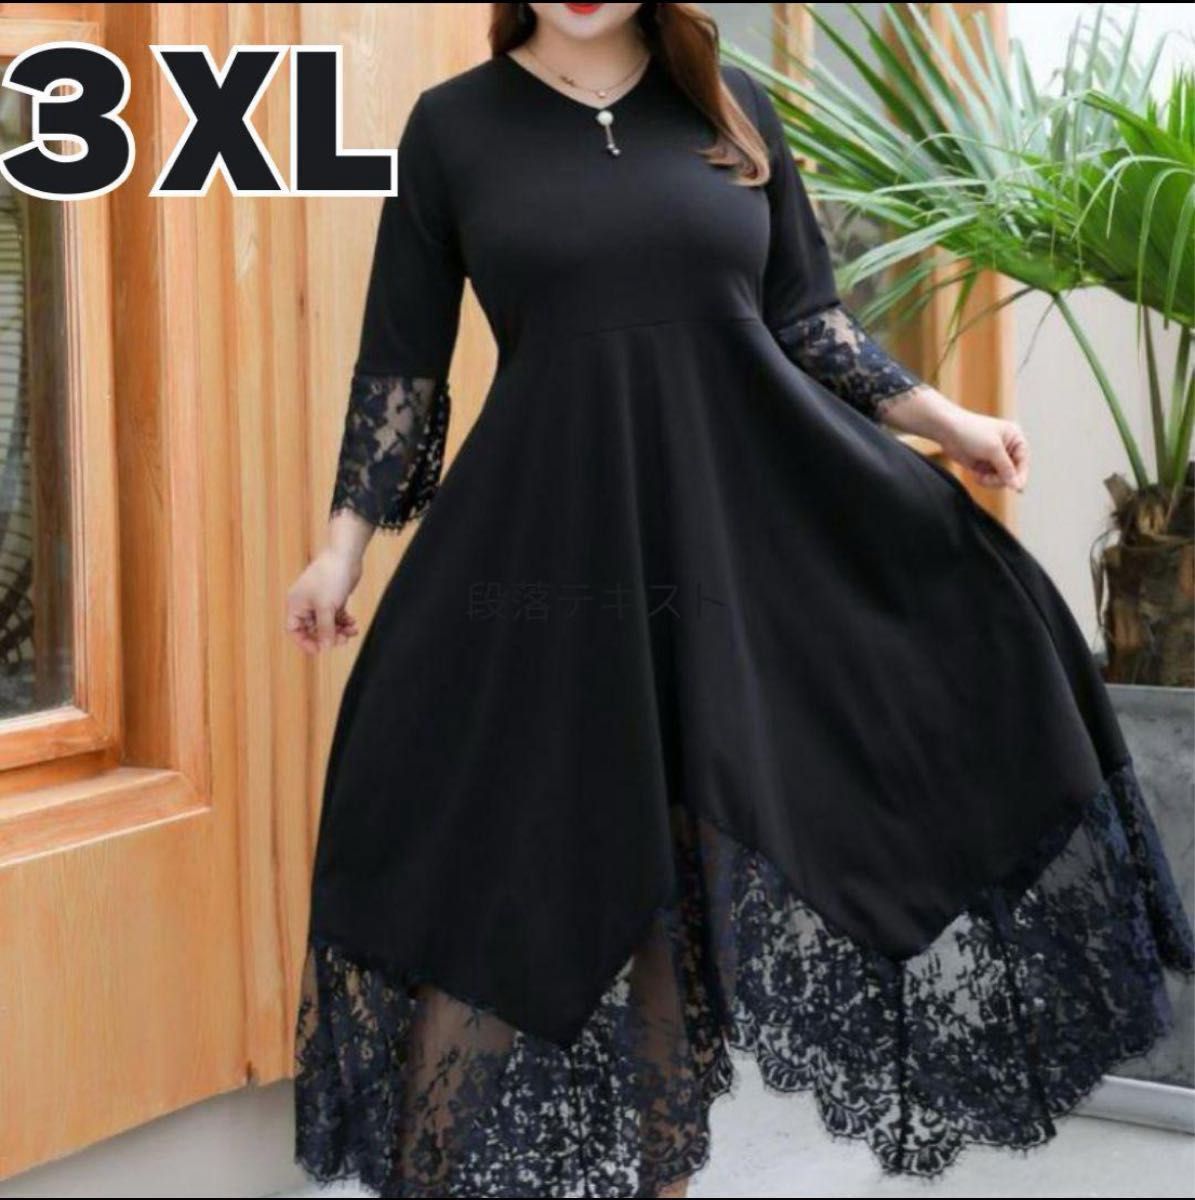 ワンピース ドレス 着やせ効果 レース結婚式 パーティフォーマル 大きいサイズ 黒 3XL ブラック